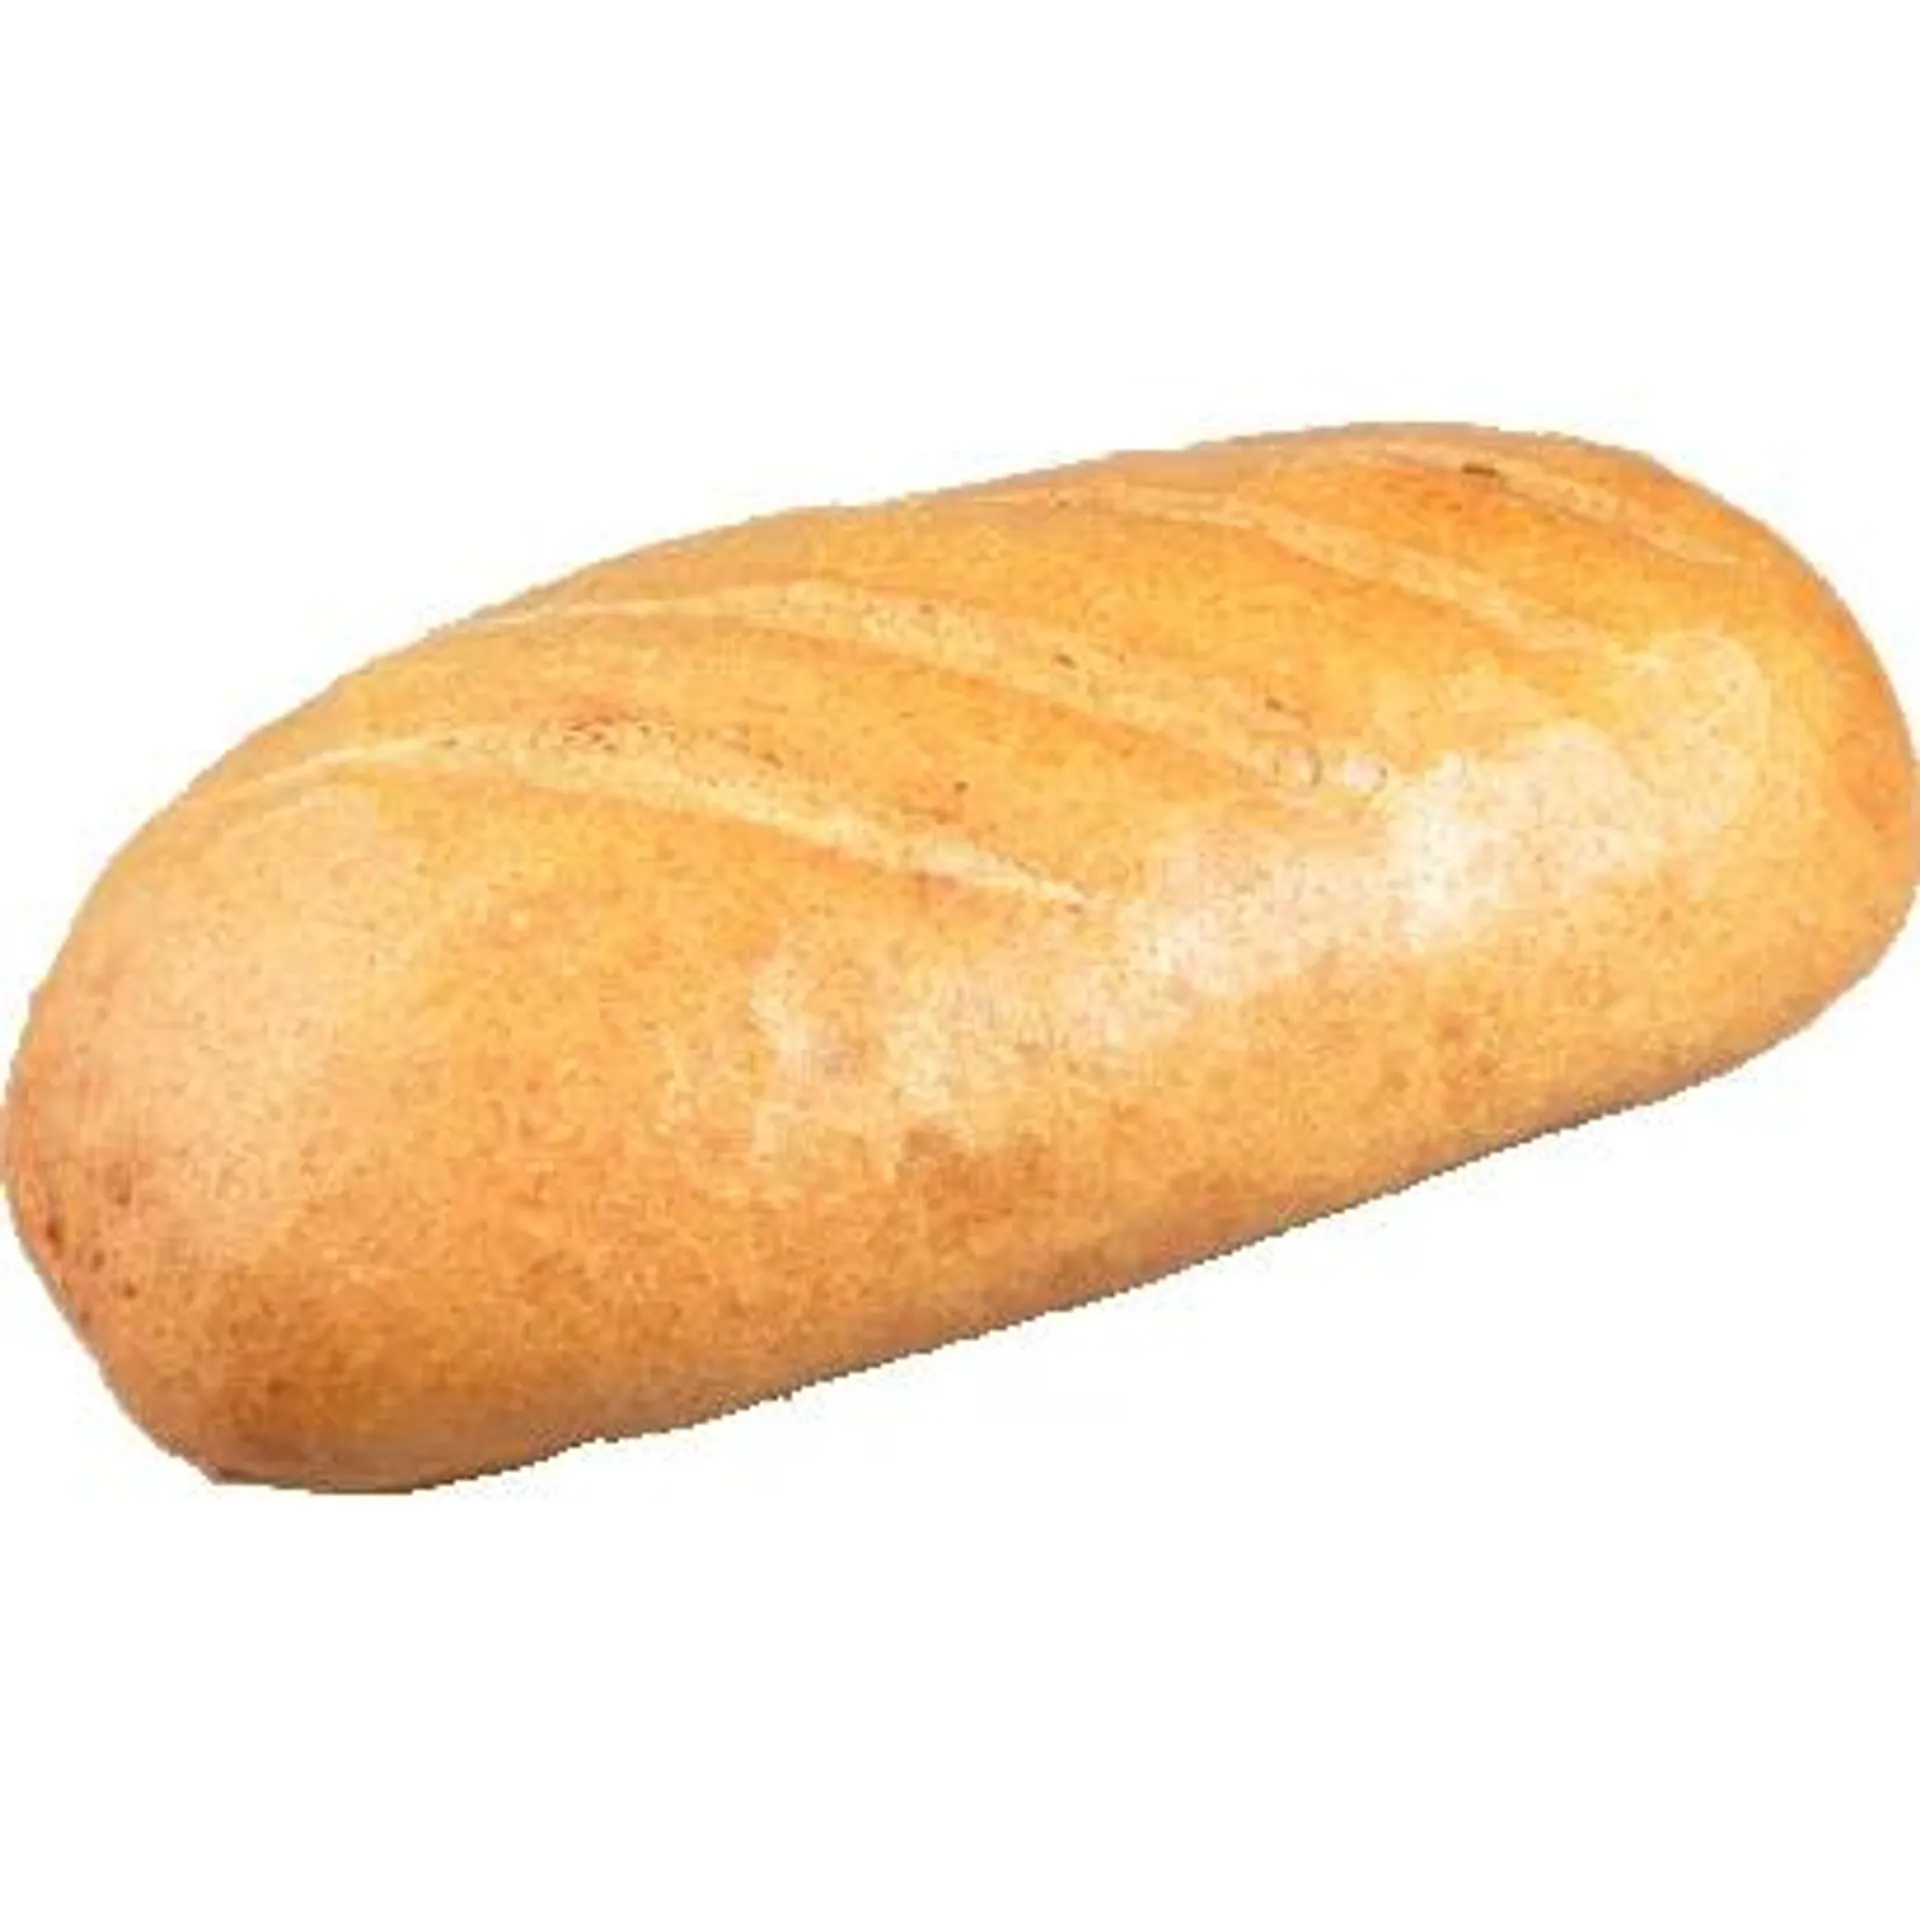 Spelled wheat bread